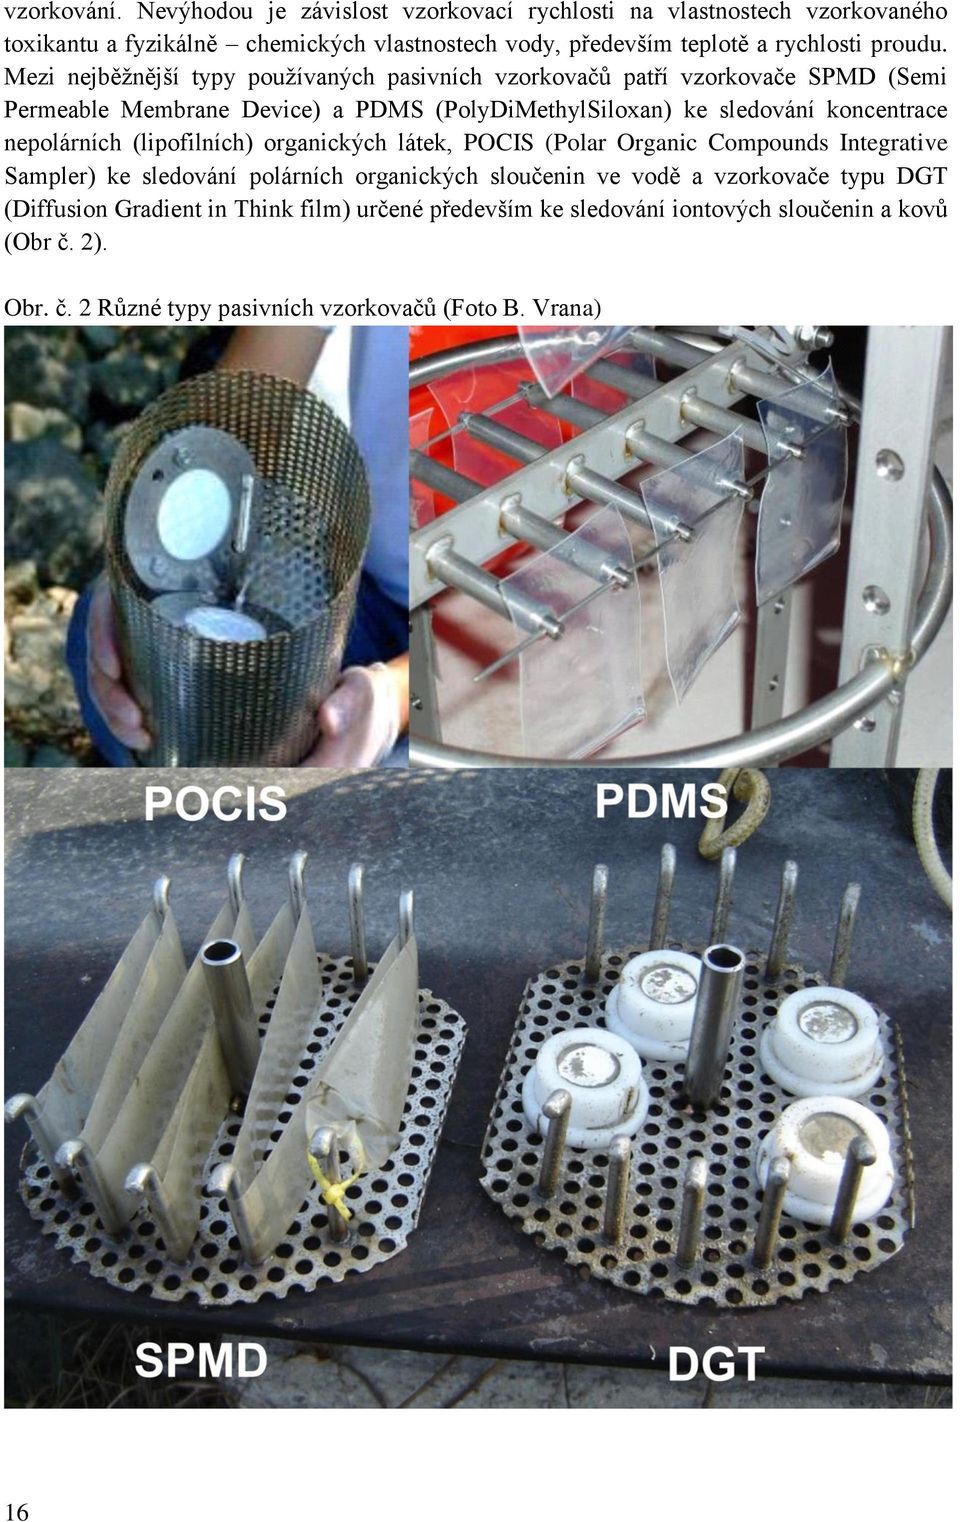 Mezi nejběžnější typy používaných pasivních vzorkovačů patří vzorkovače SPMD (Semi Permeable Membrane Device) a PDMS (PolyDiMethylSiloxan) ke sledování koncentrace